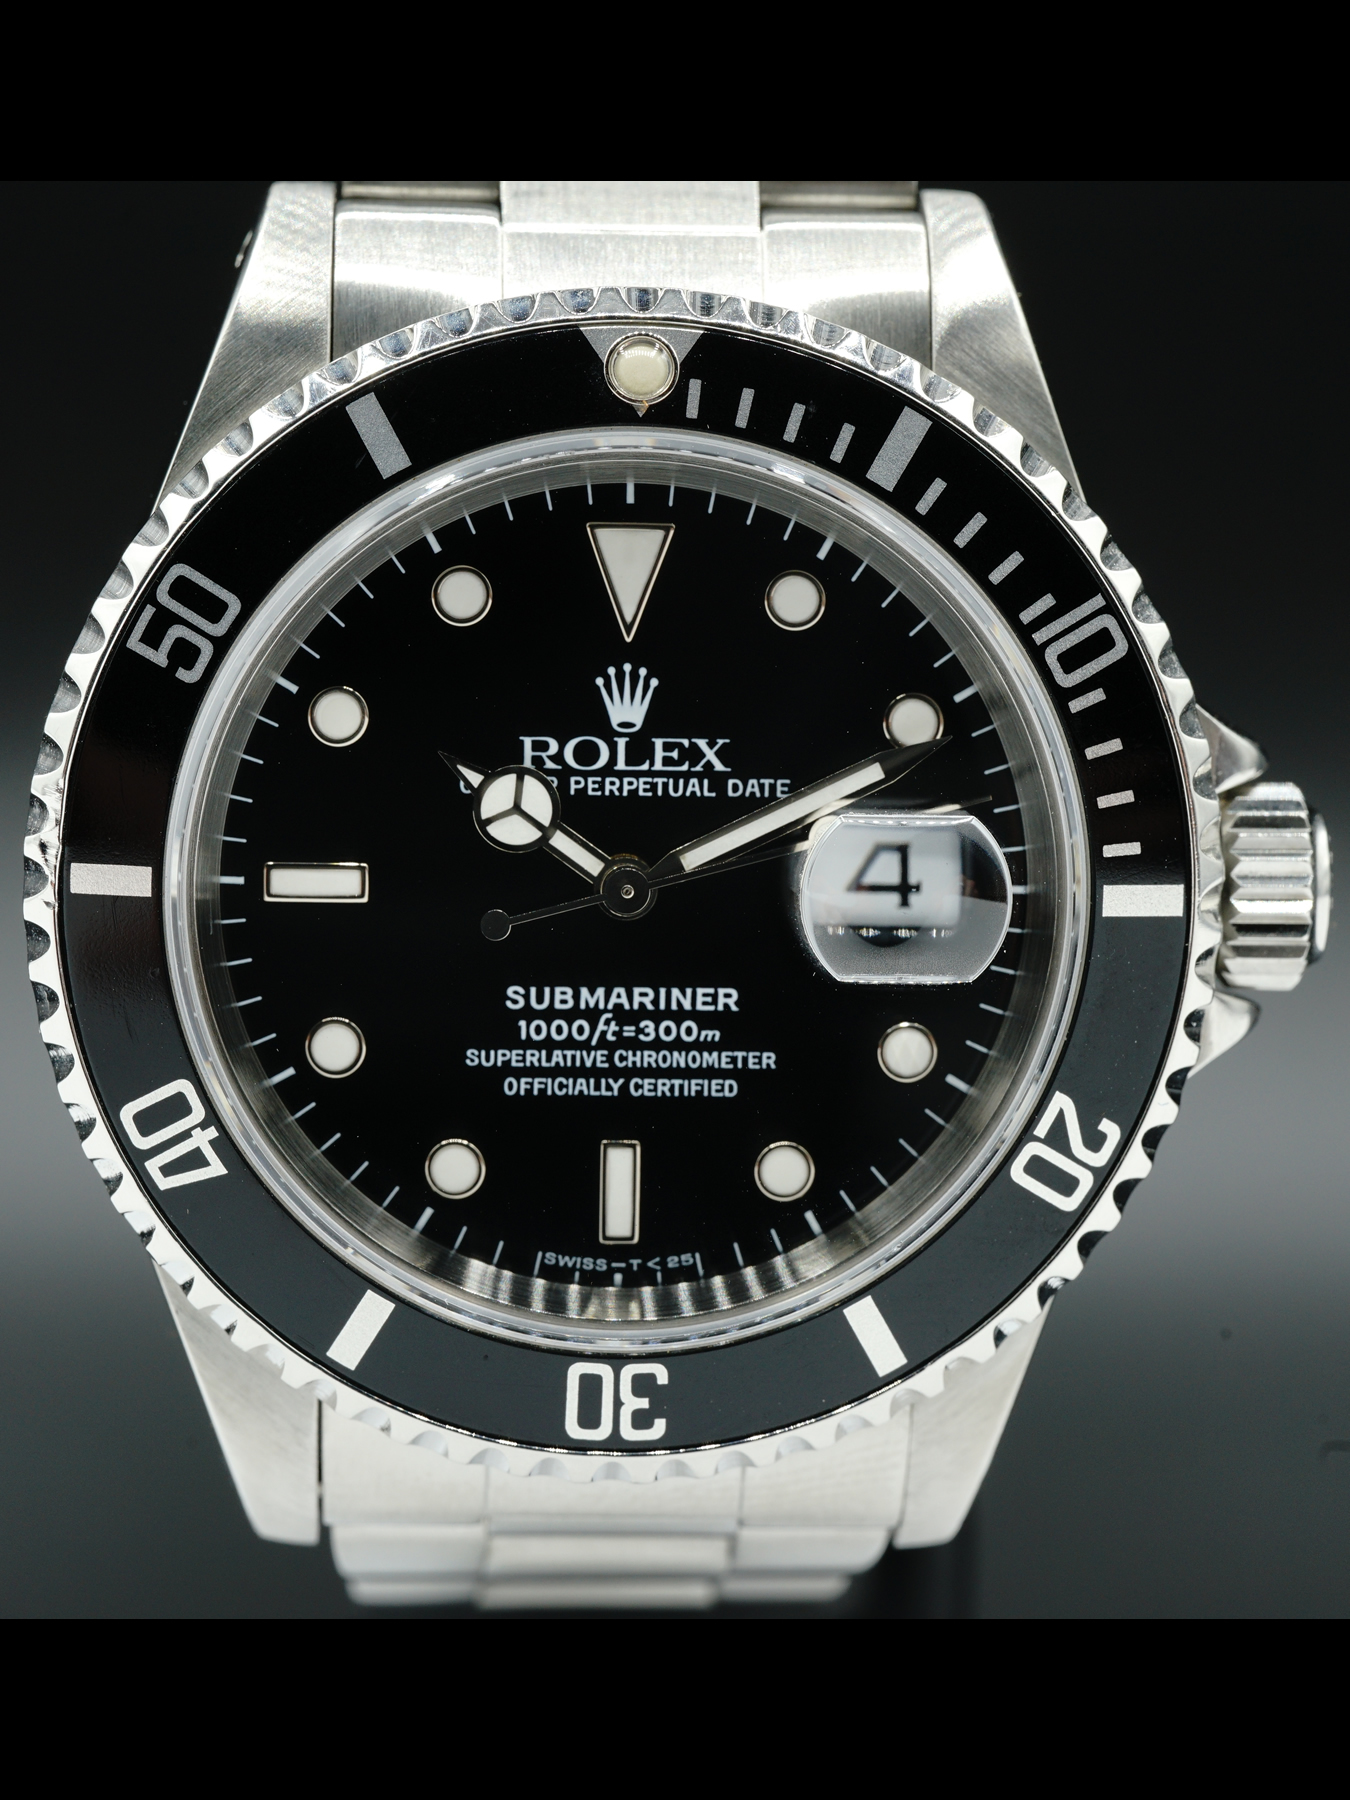 Offentliggørelse Tilskud Opdage Rolex Submariner 11610 - Exquisite Timepieces